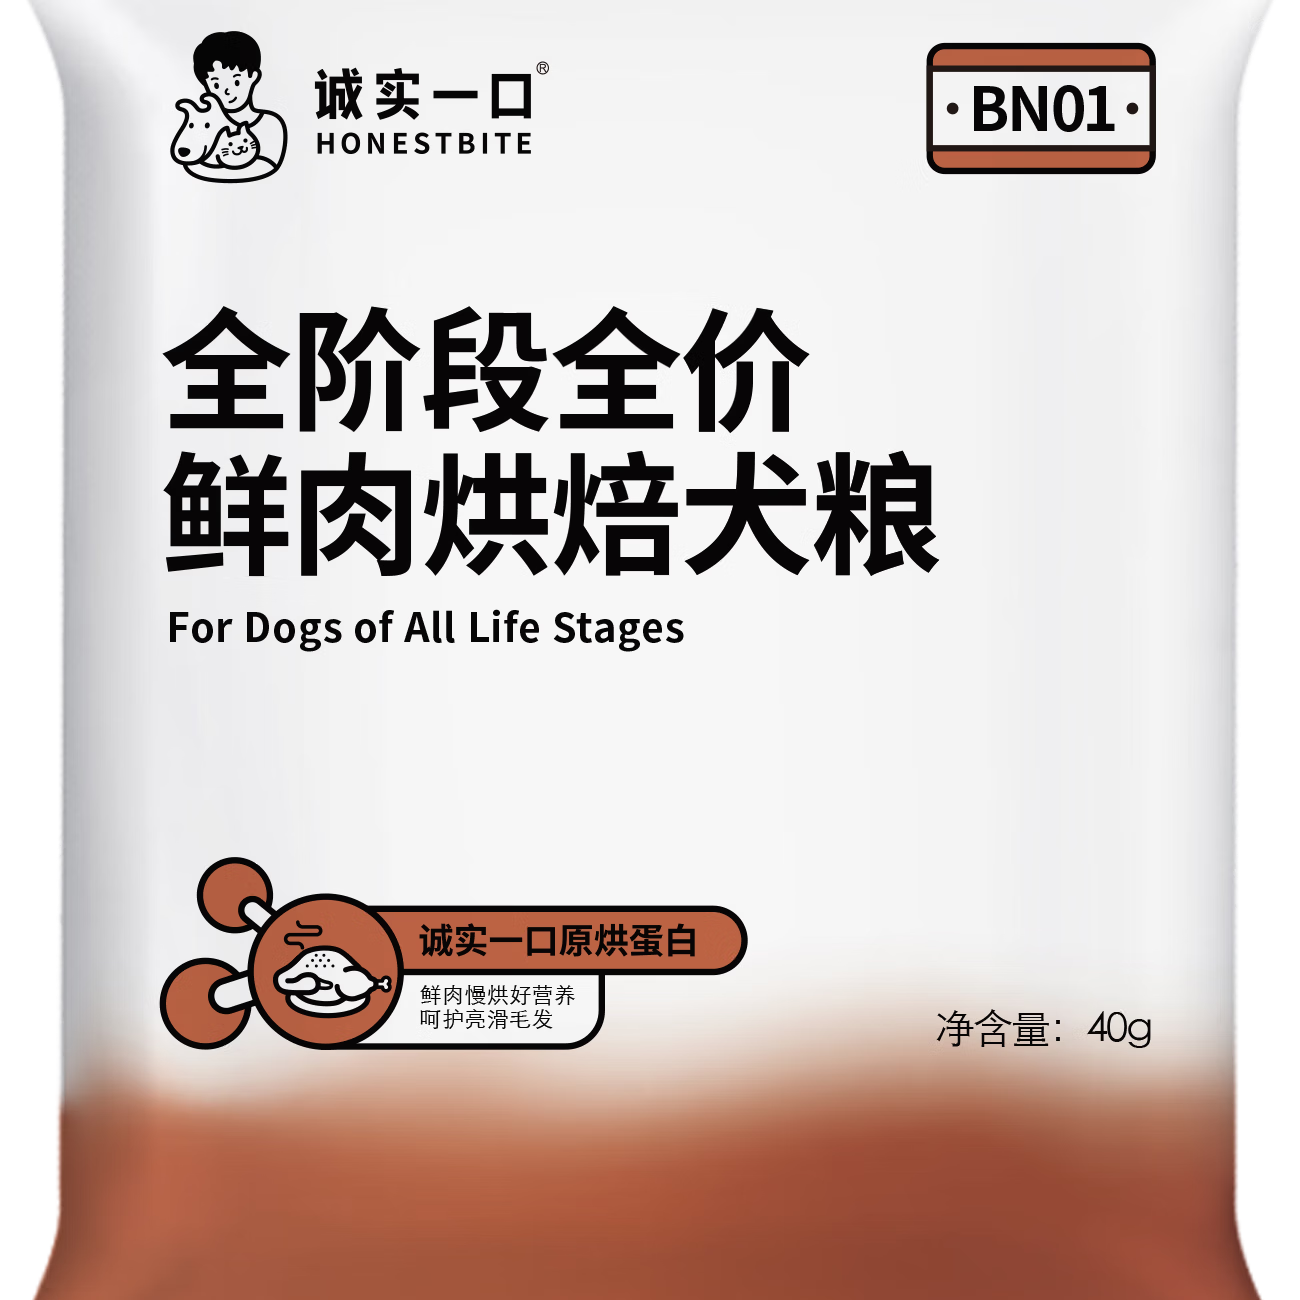 诚实一口 BN01全阶段全价鲜肉烘焙犬粮40g 0.94元